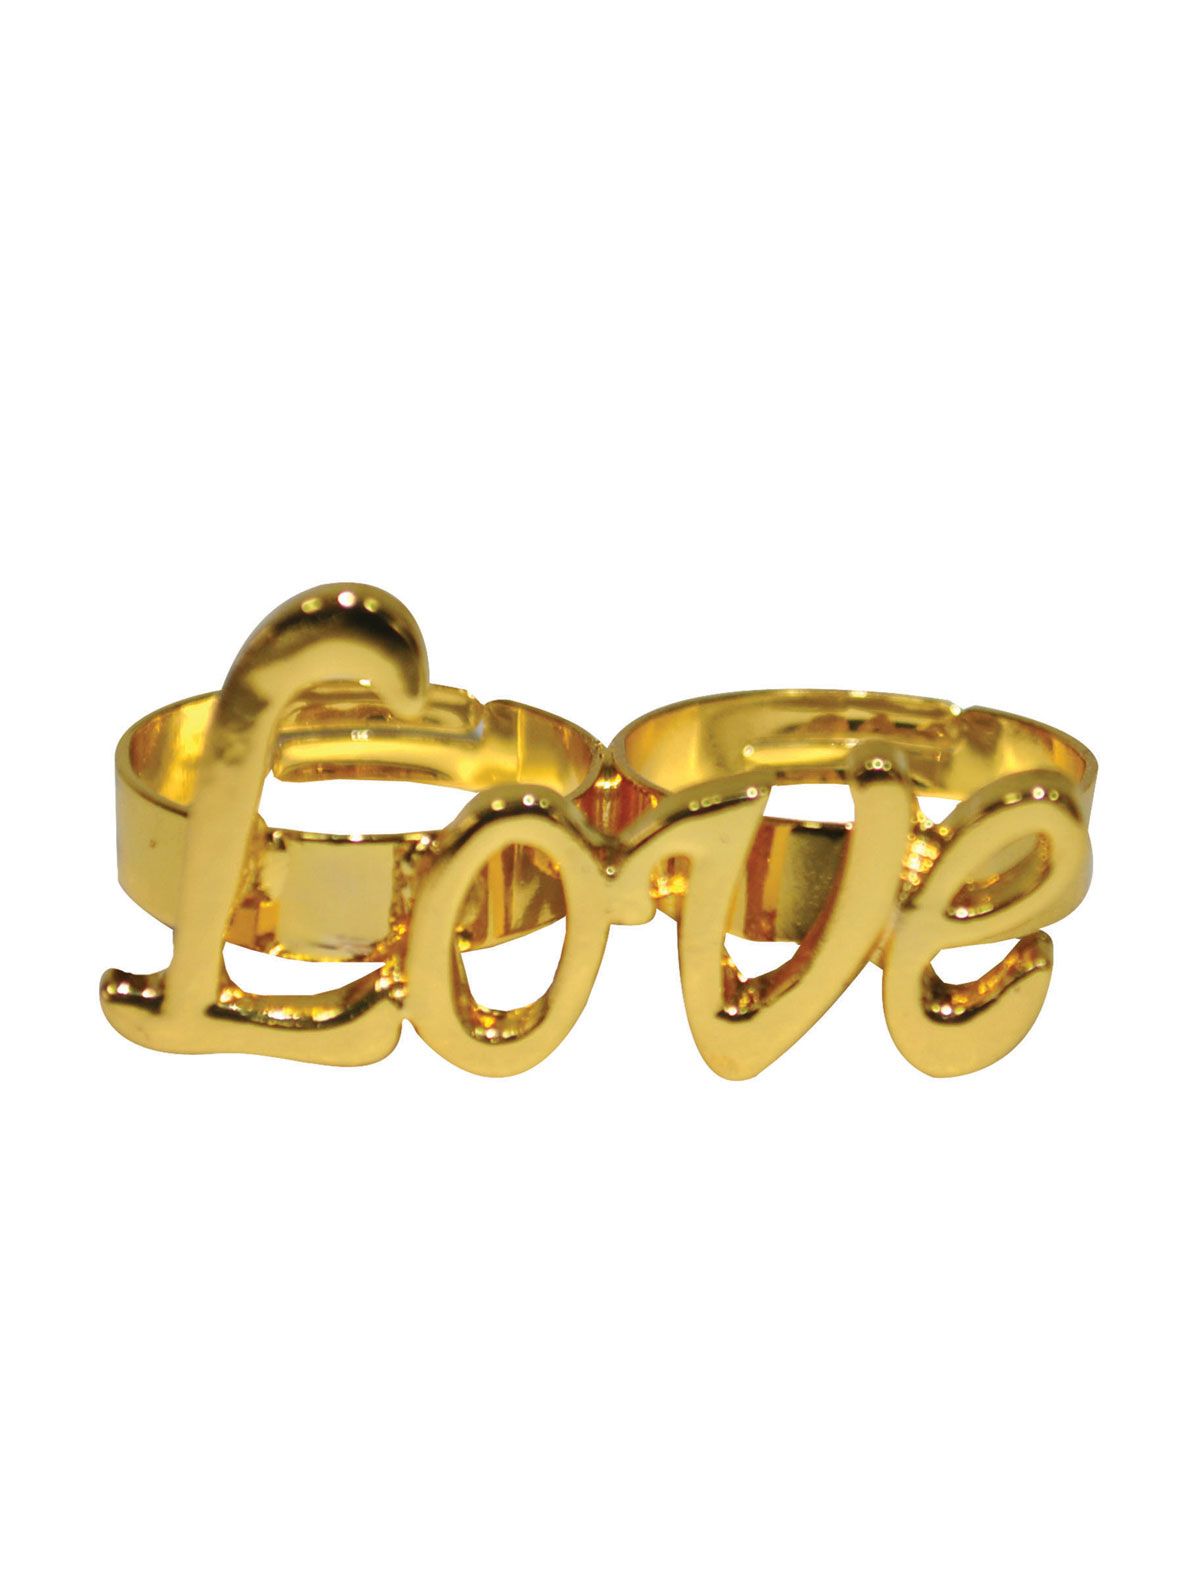 verkoop - attributen - Juwelen - Ring LOVE